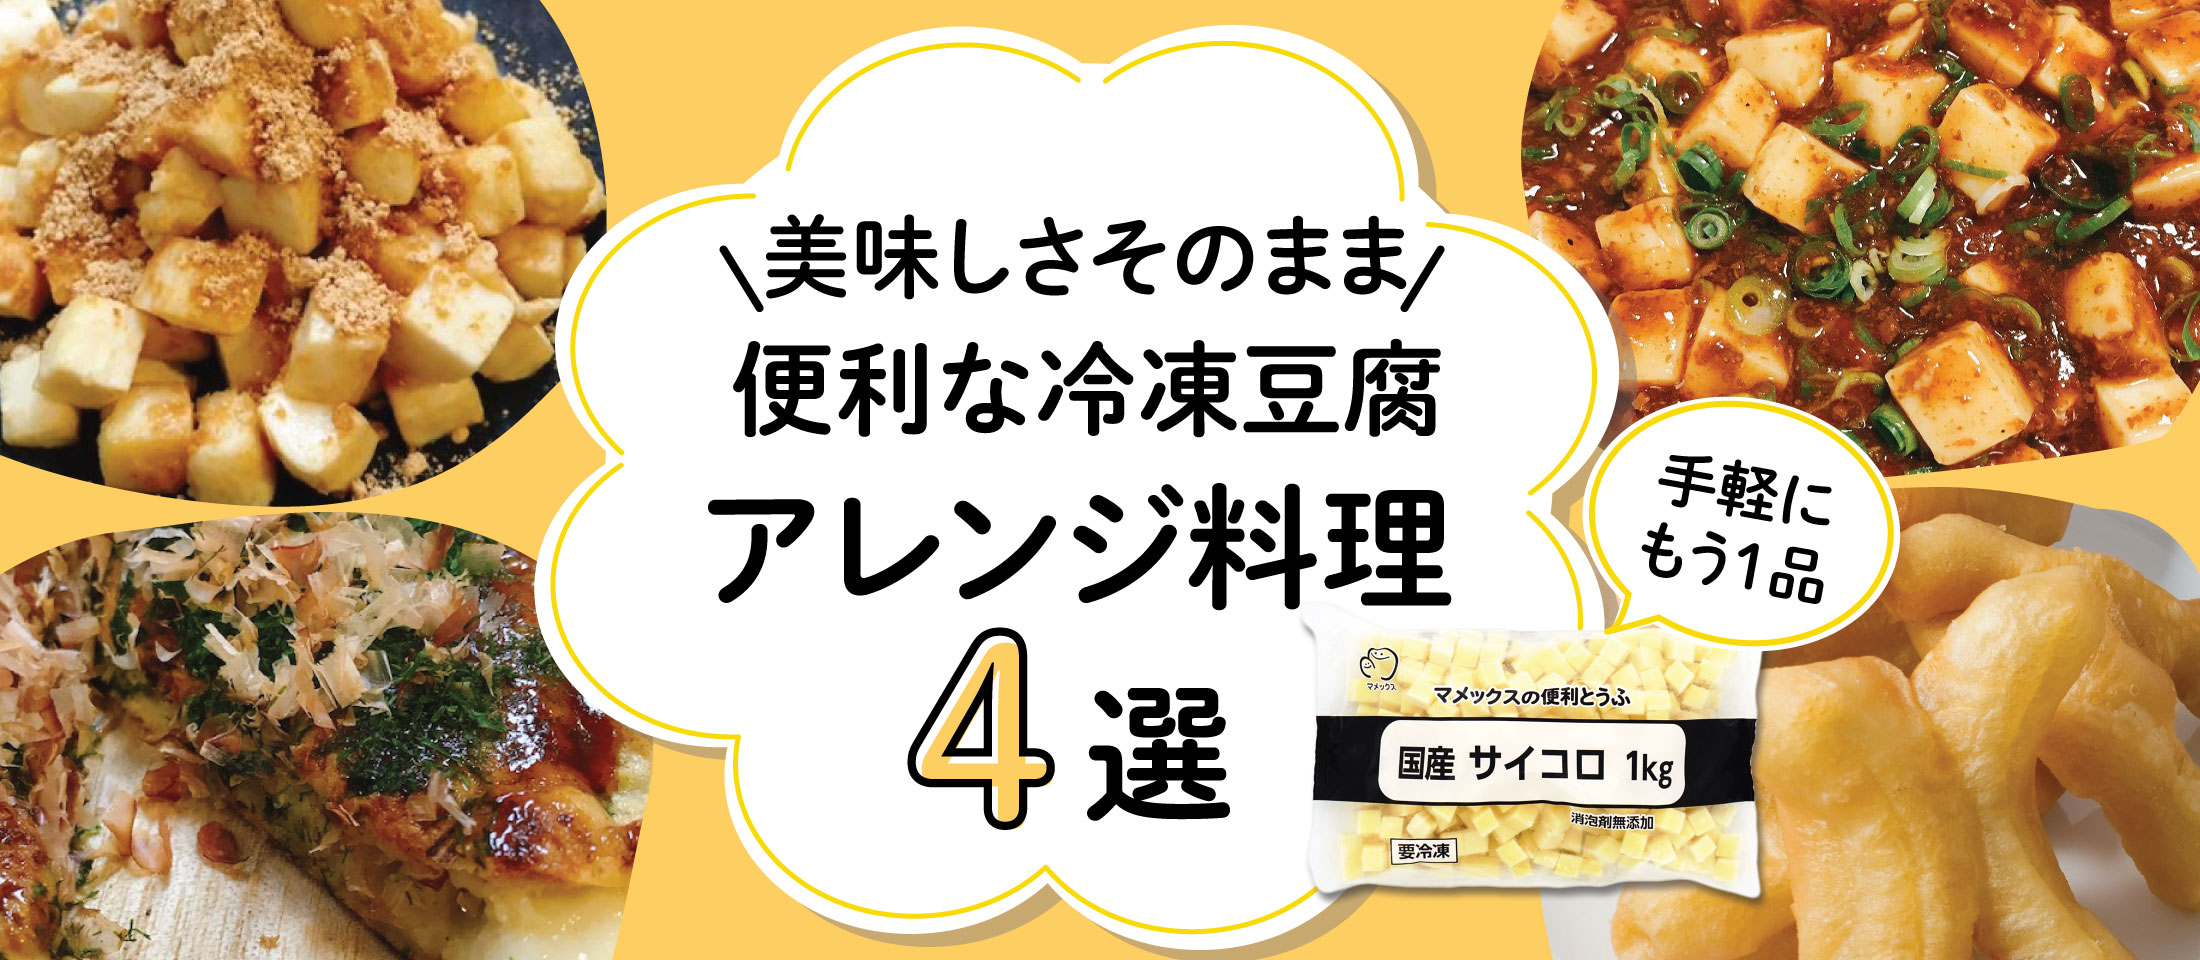 便利な冷凍豆腐でアレンジ料理特集4選